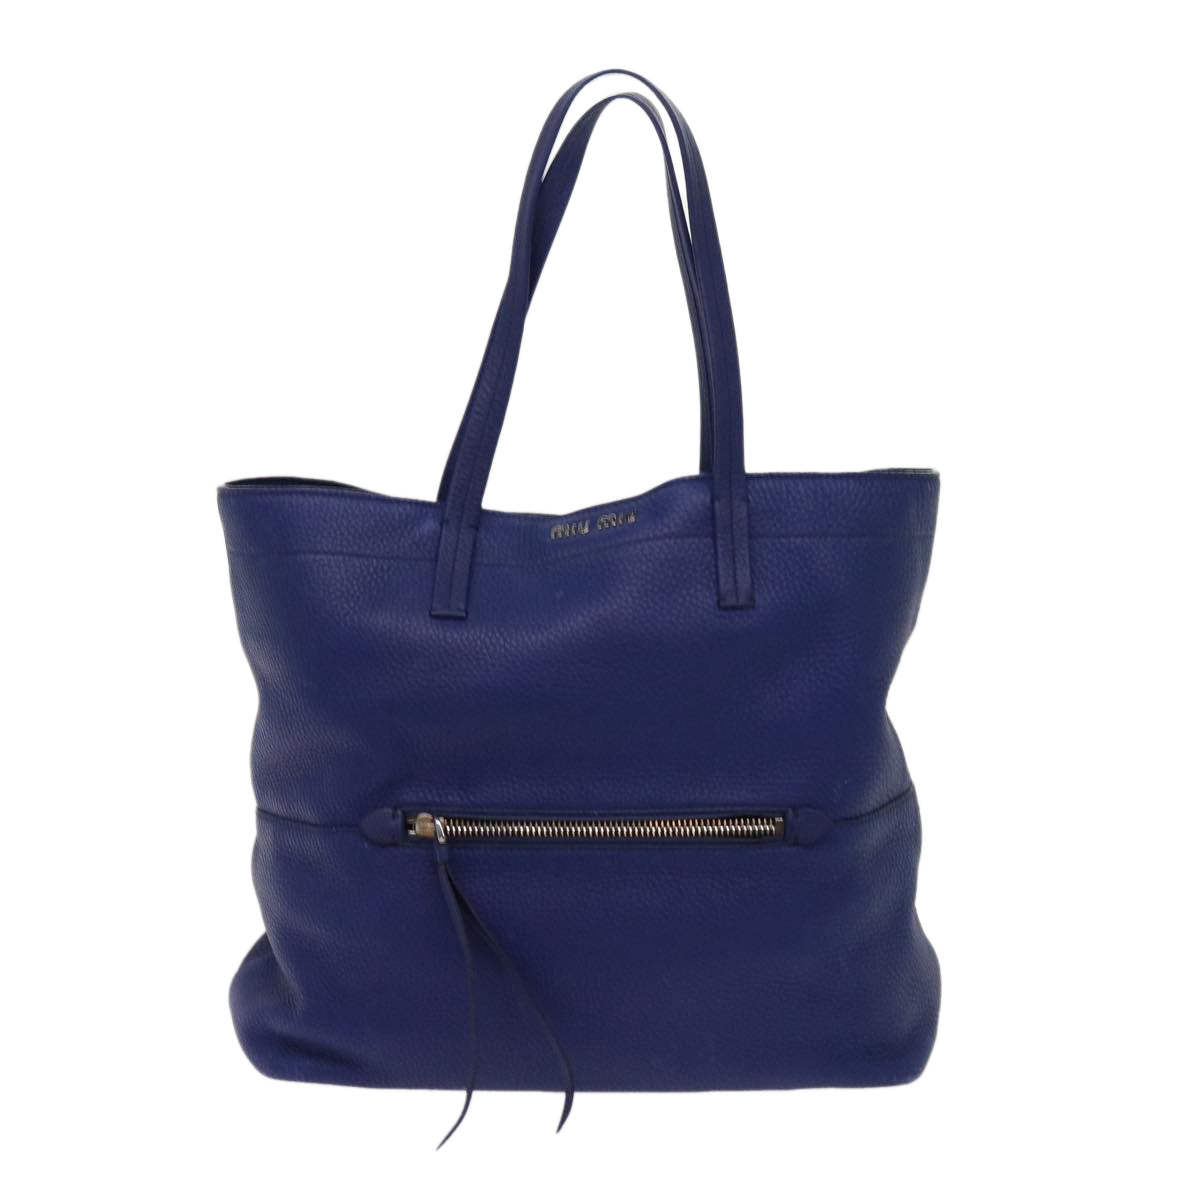 Miu Miu Tote Bag Leather Blue Auth 63446 - 0